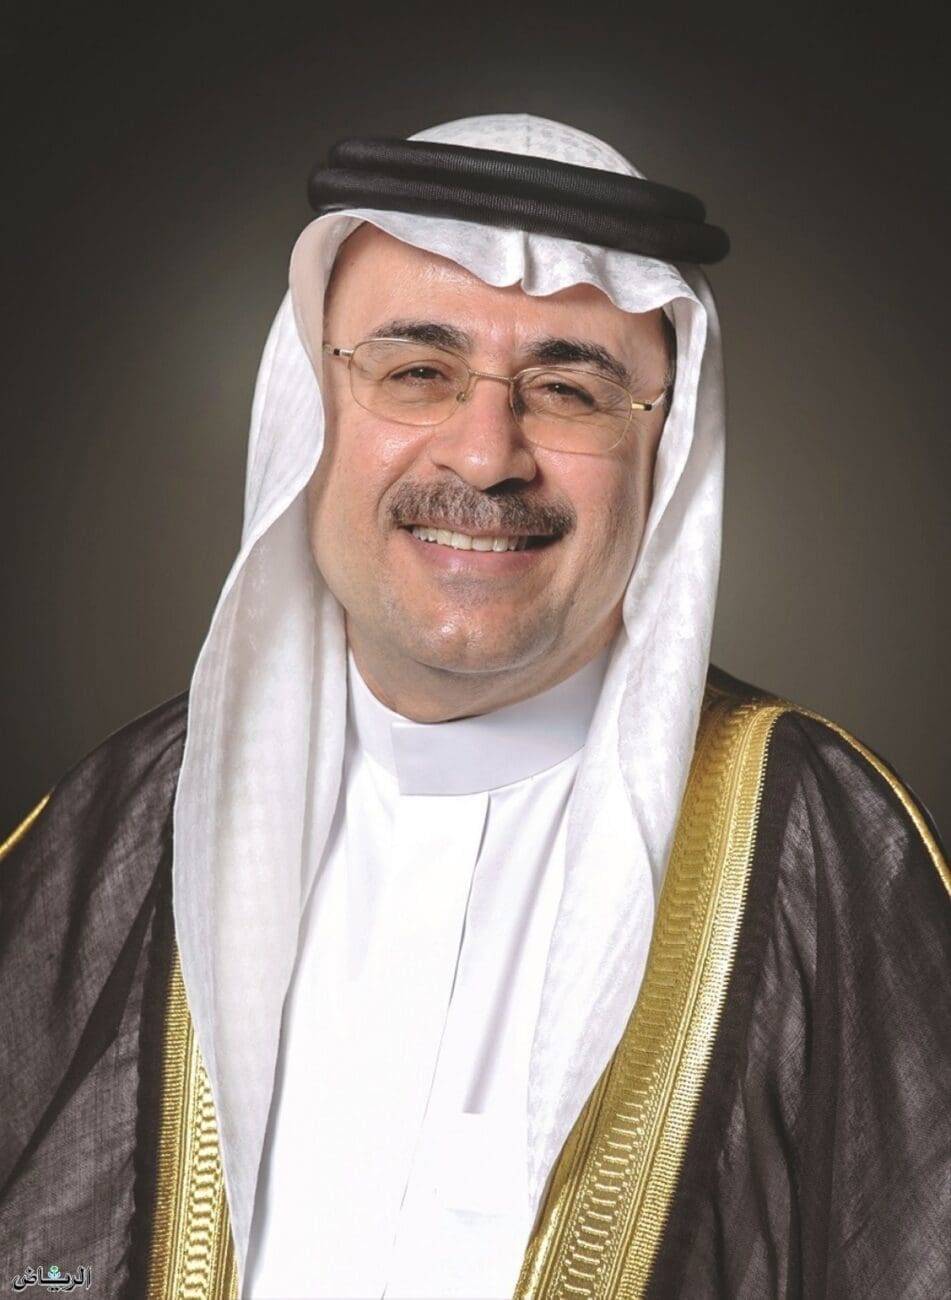 السيد/ أمين الناصر رئيس أرامكو